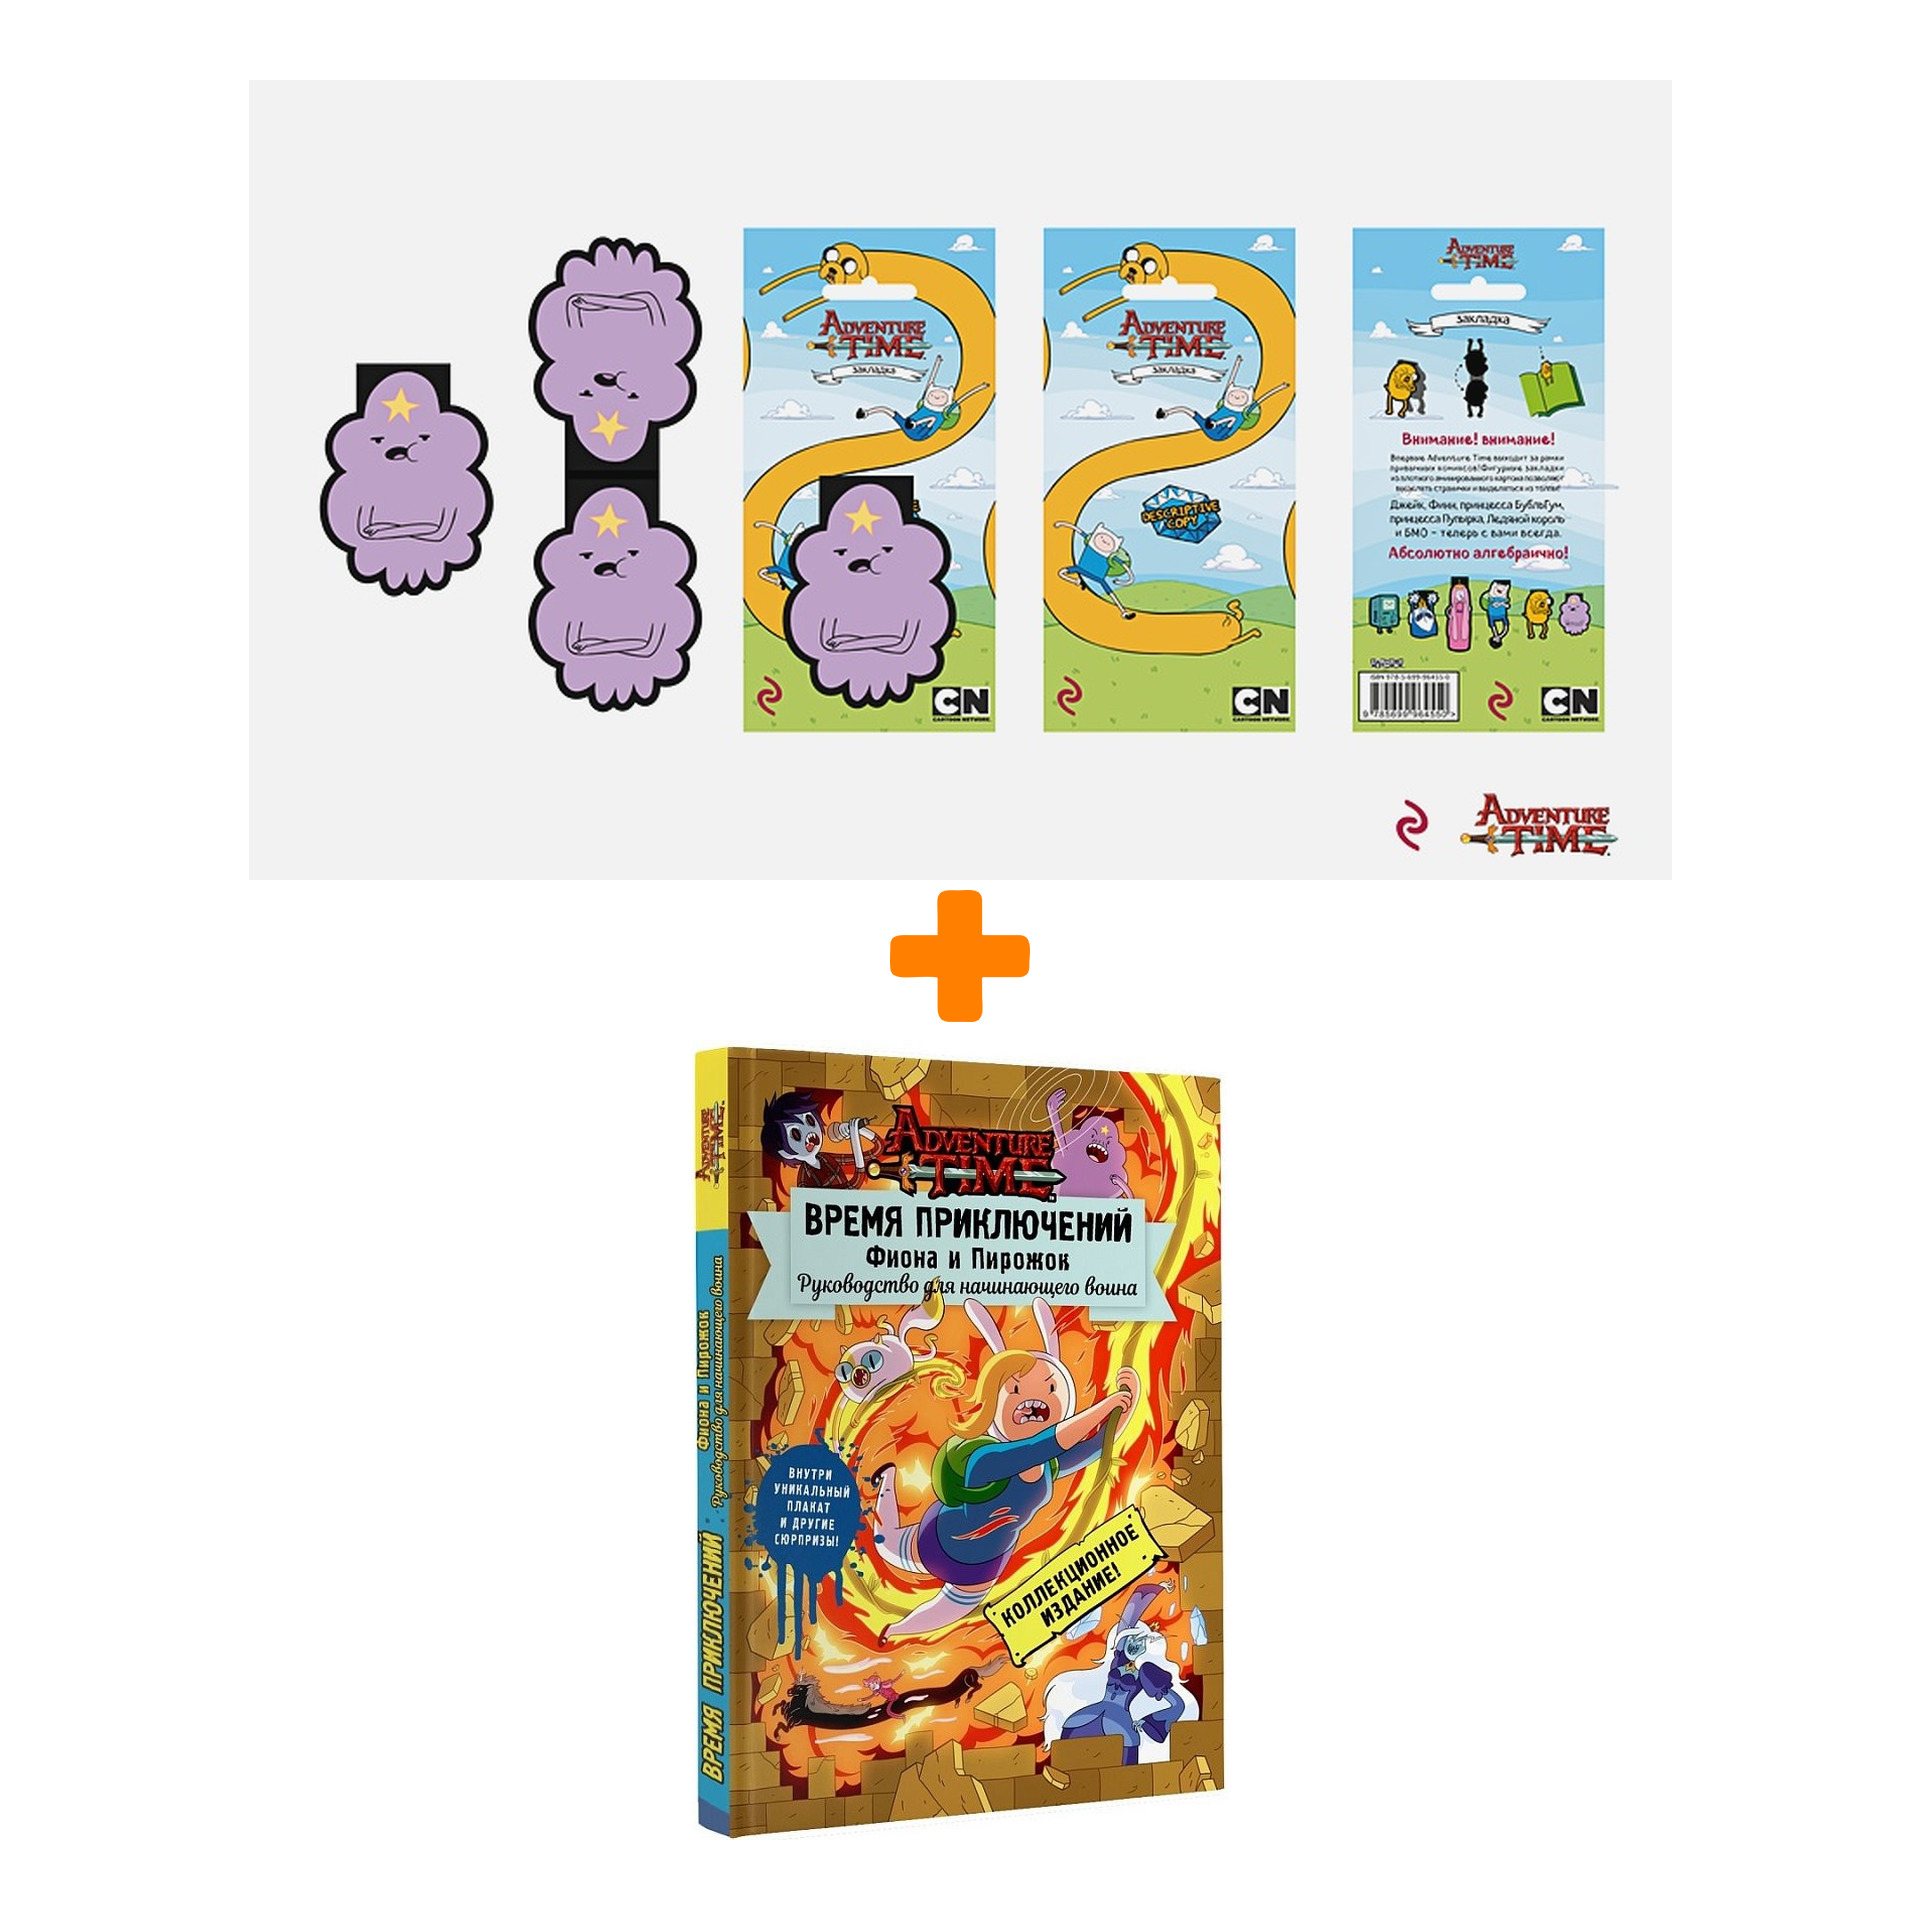 Набор Adventure Time закладка + книга Фиона и Пирожок Руководство для начинающего воина цена и фото